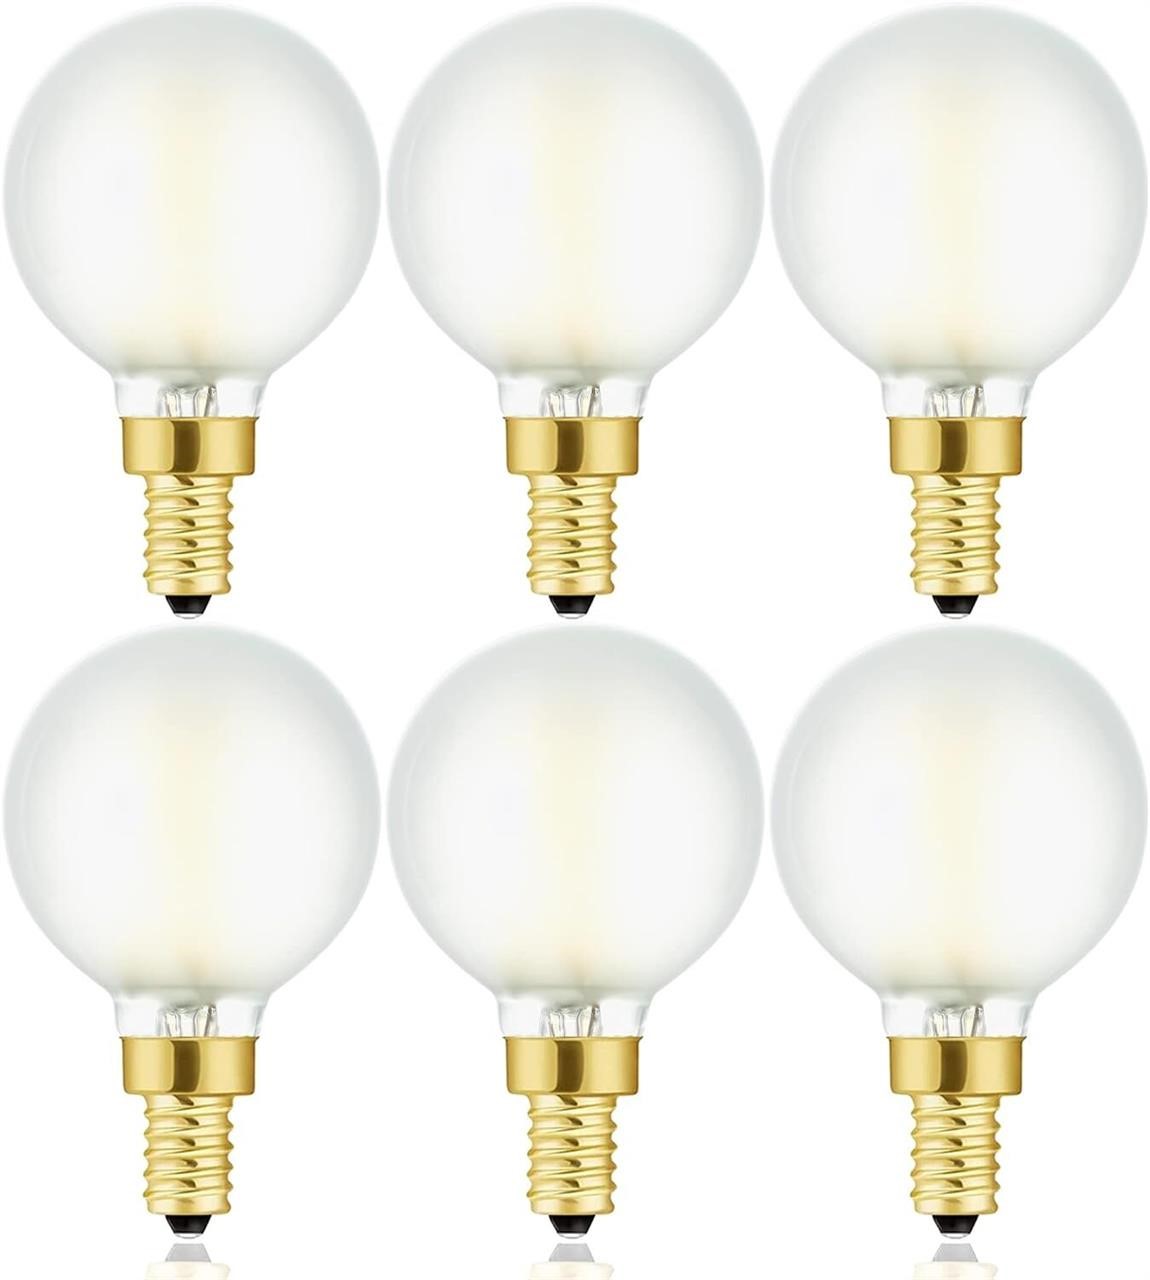 G-16.5 led edition bulb